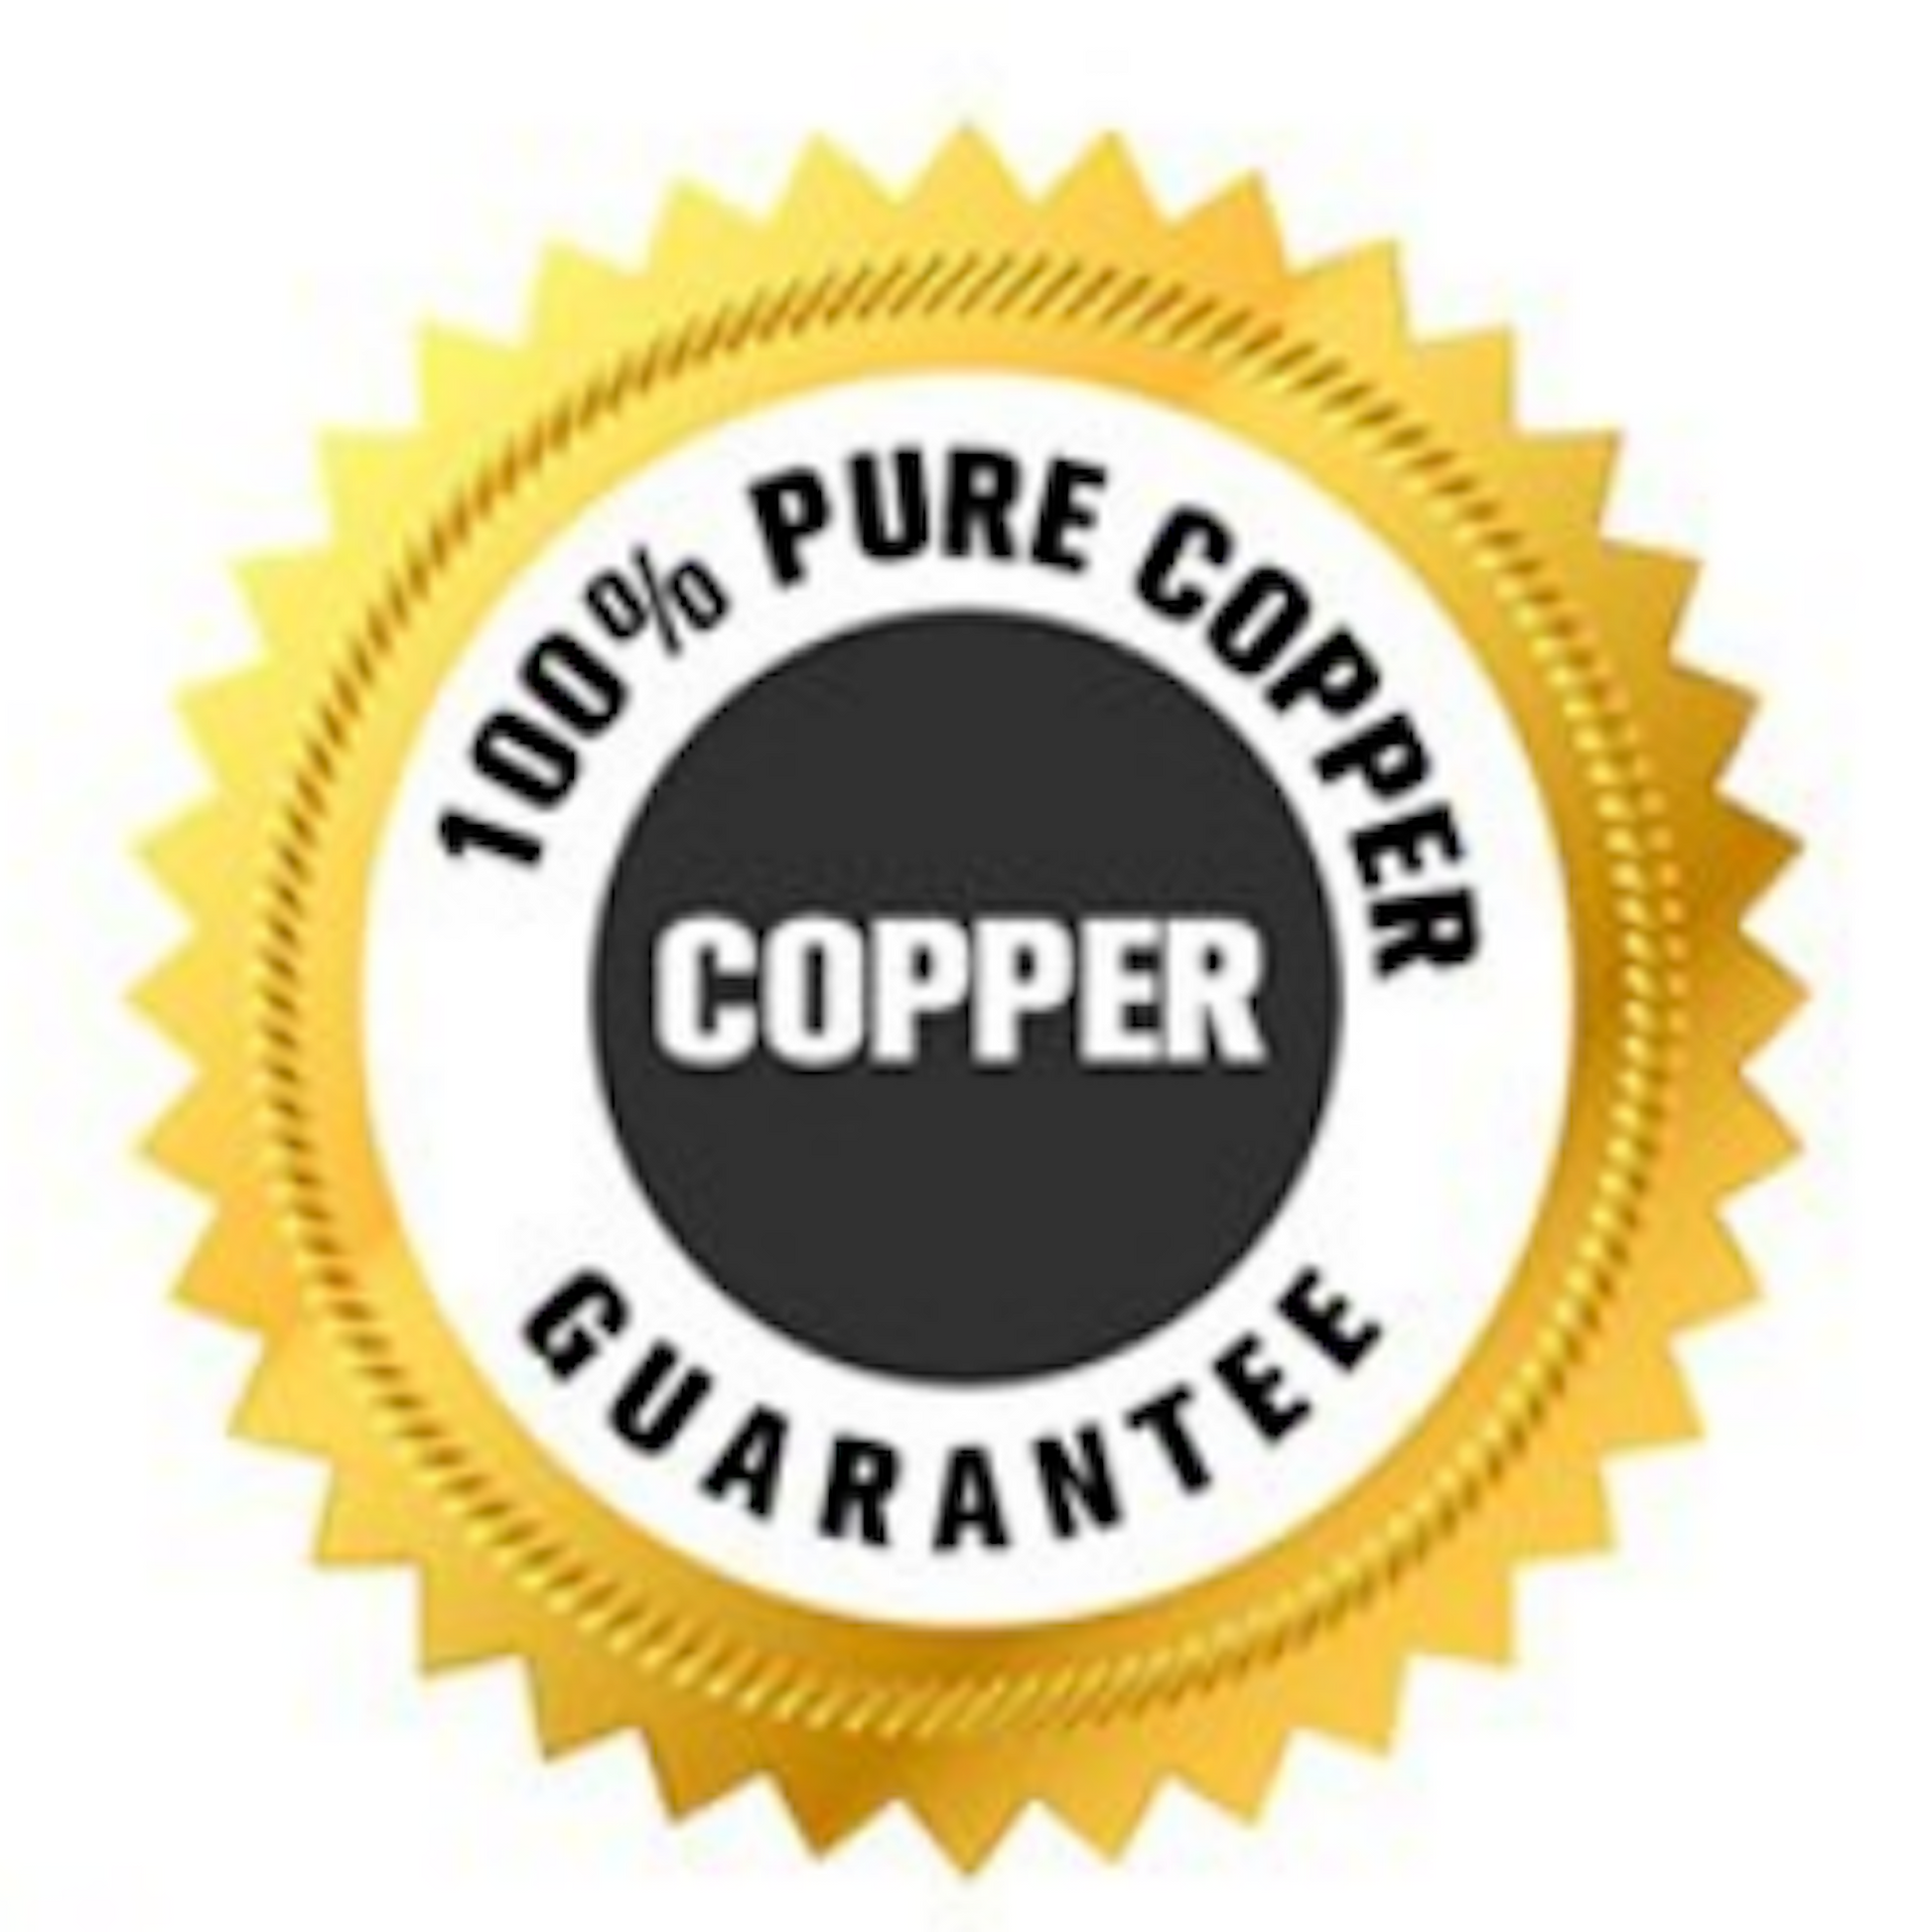 100% Pure Copper